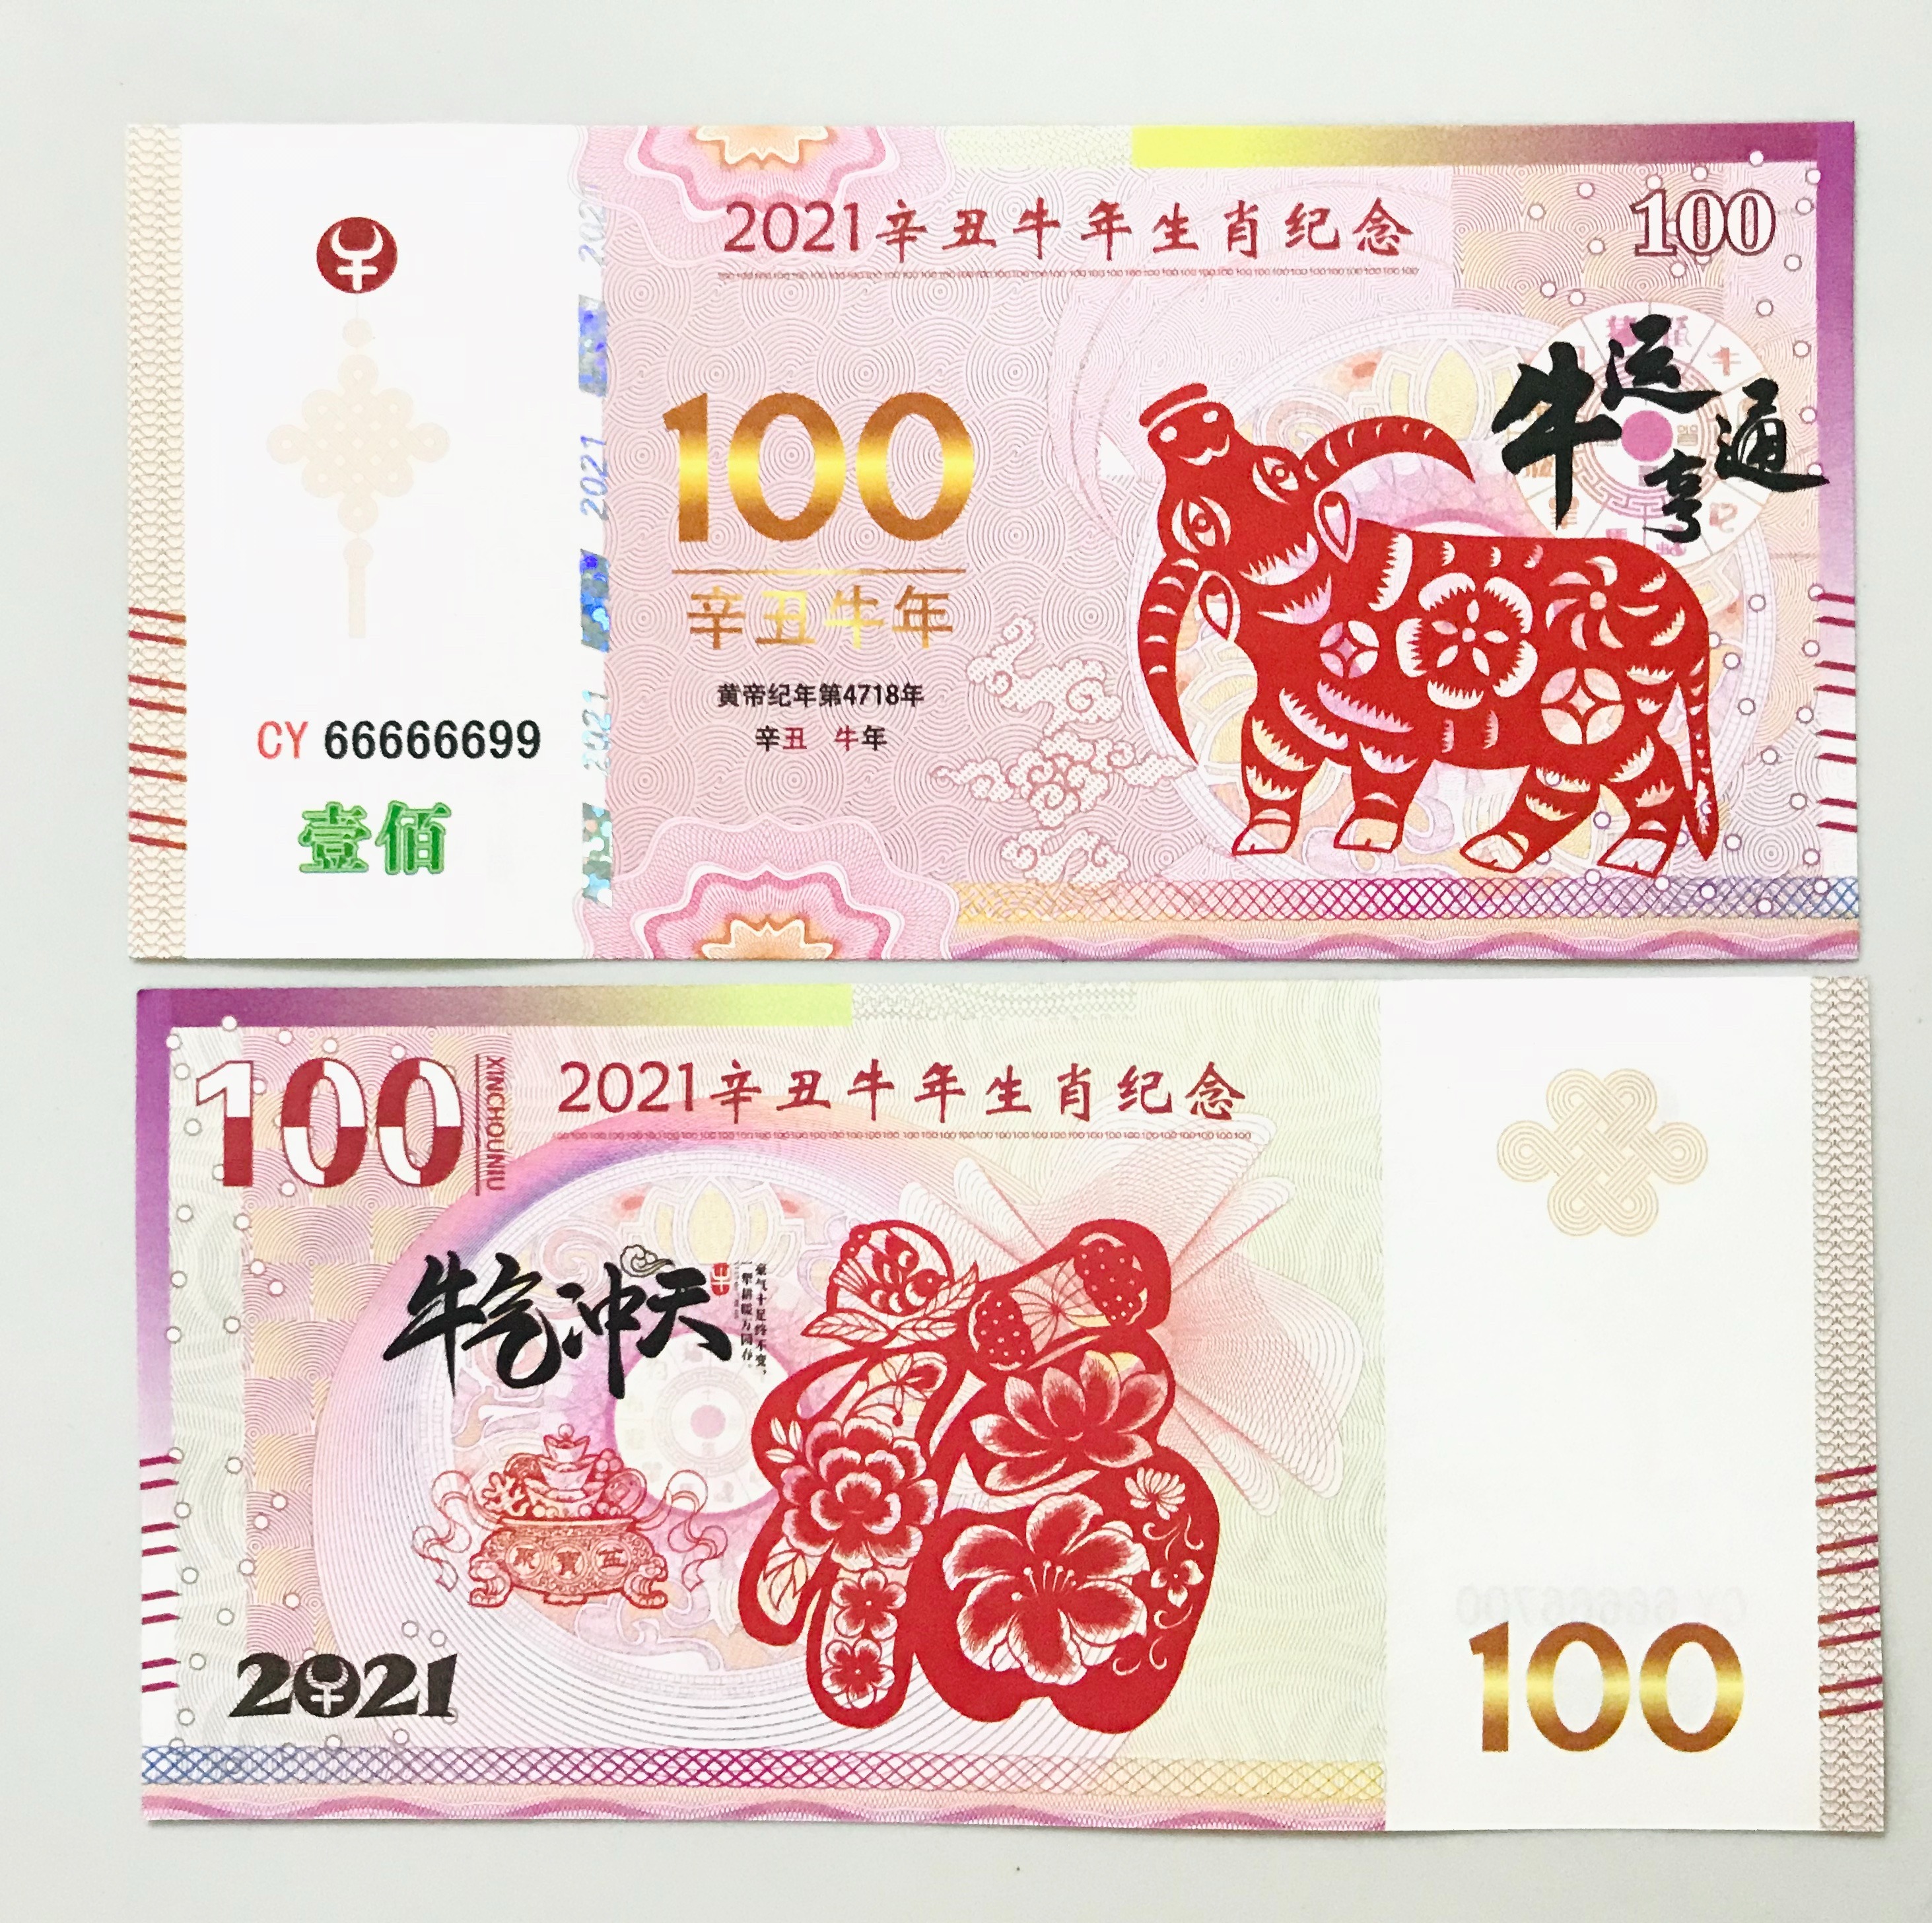 Tiền Macao: Bức ảnh trưng bày về tiền Macao sẽ khiến bạn ngỡ ngàng bởi những thiết kế độc đáo và sự đa dạng về màu sắc. Hãy tìm hiểu về lịch sử và ý nghĩa tiền Macao thông qua những hình ảnh đẹp và tinh tế.